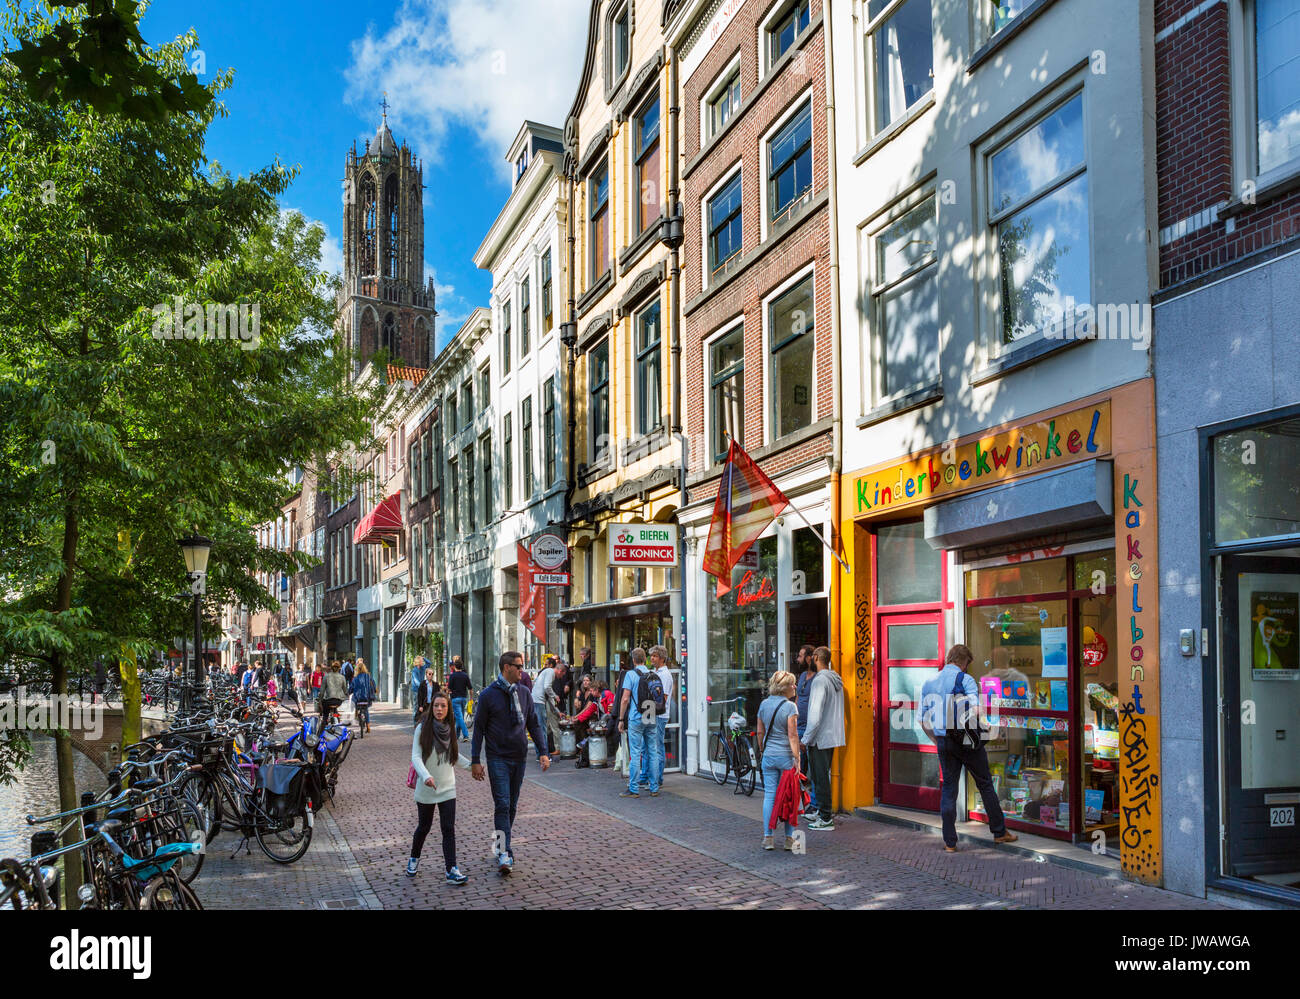 Geschäfte, Bars und Cafés entlang der Oudegracht (alten Kanal) mit dem Dom Tower hinter, Utrecht, Niederlande Stockfoto